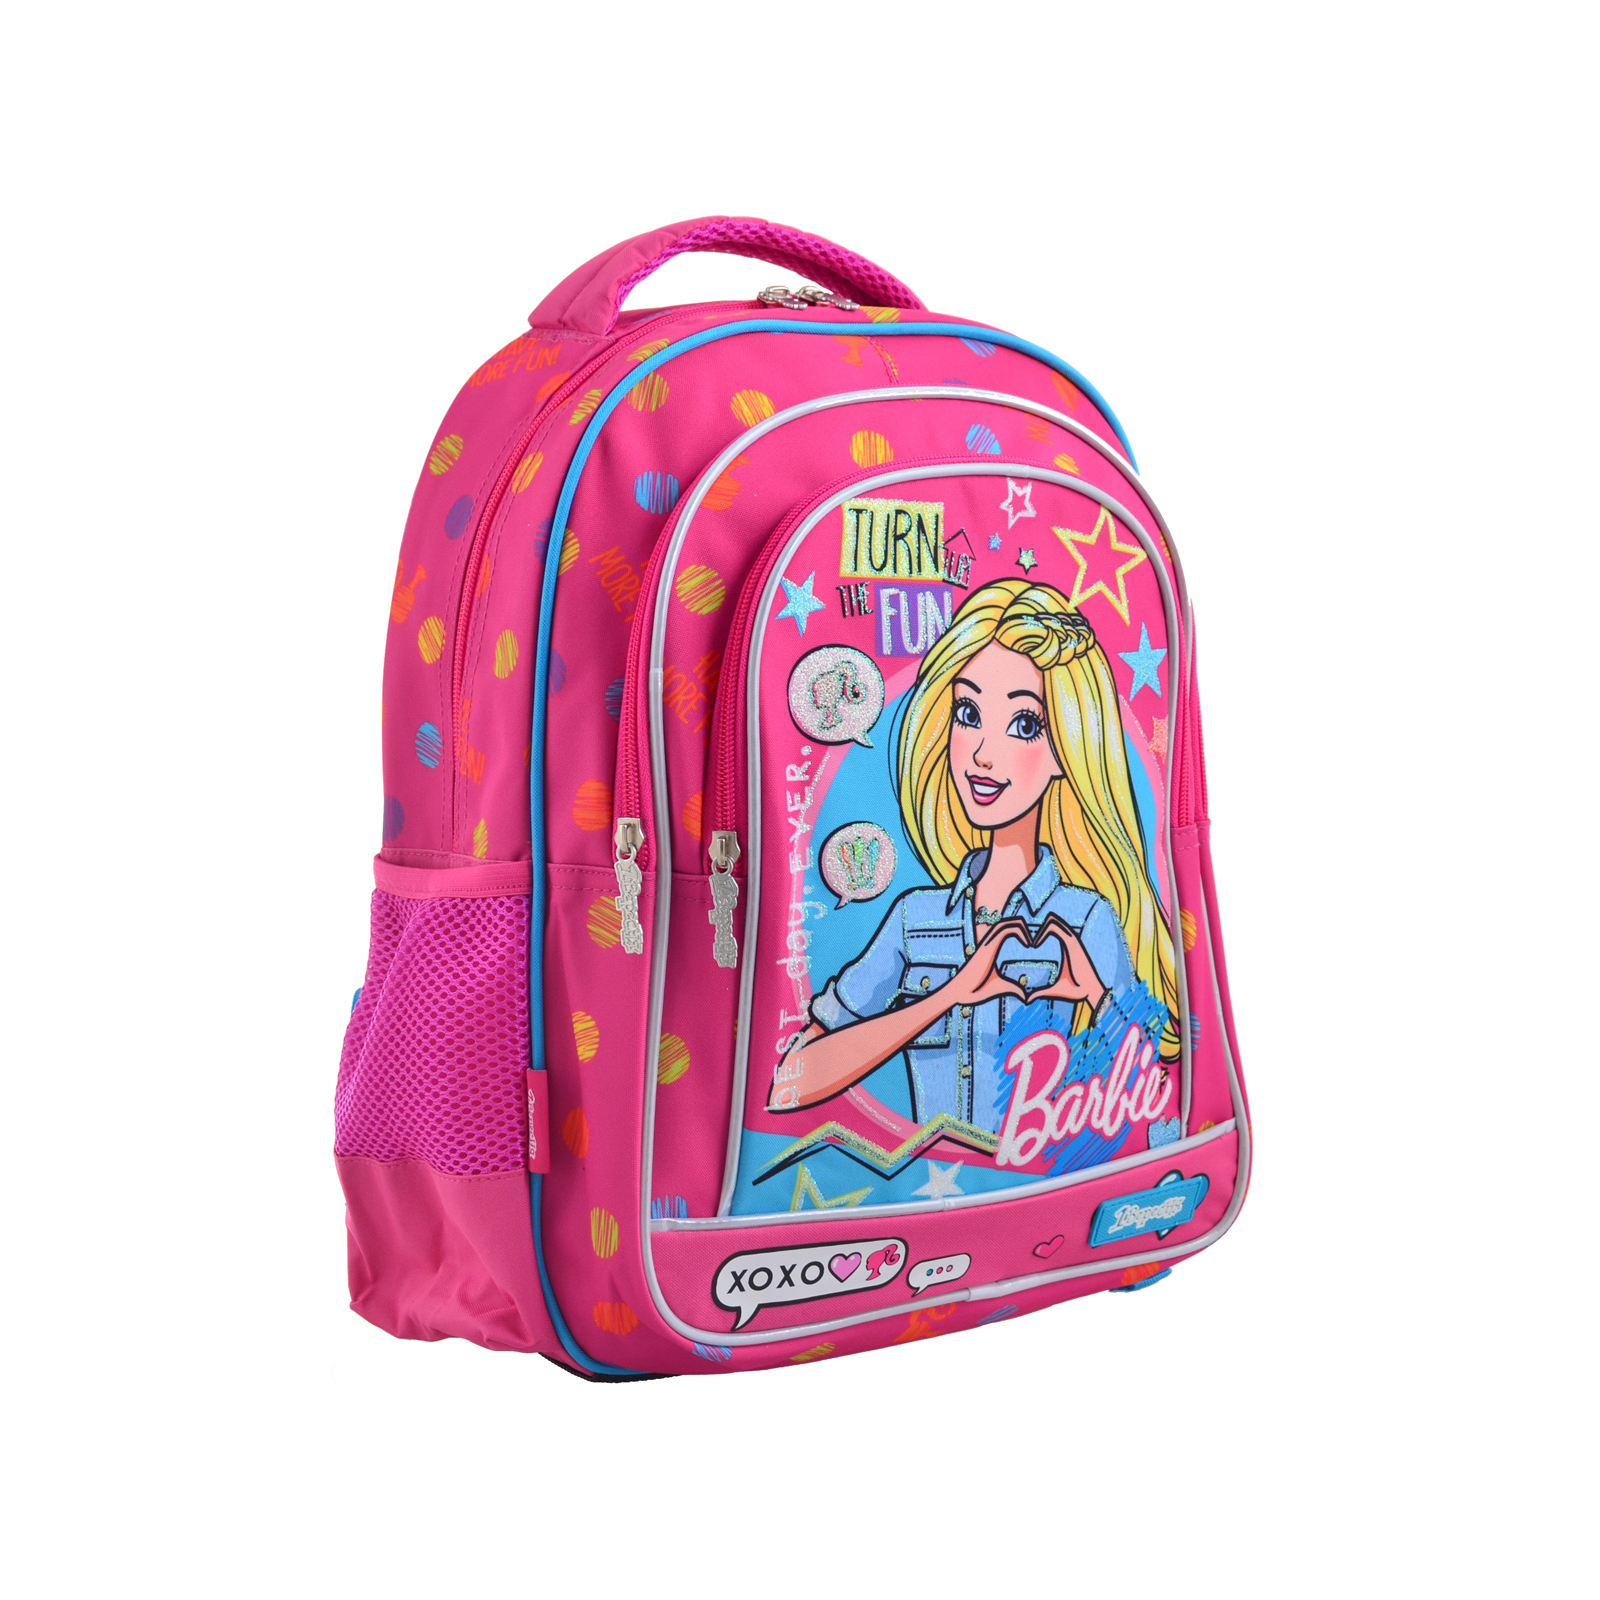 Рюкзак шкільний 1 вересня S-22 Barbie (556335)